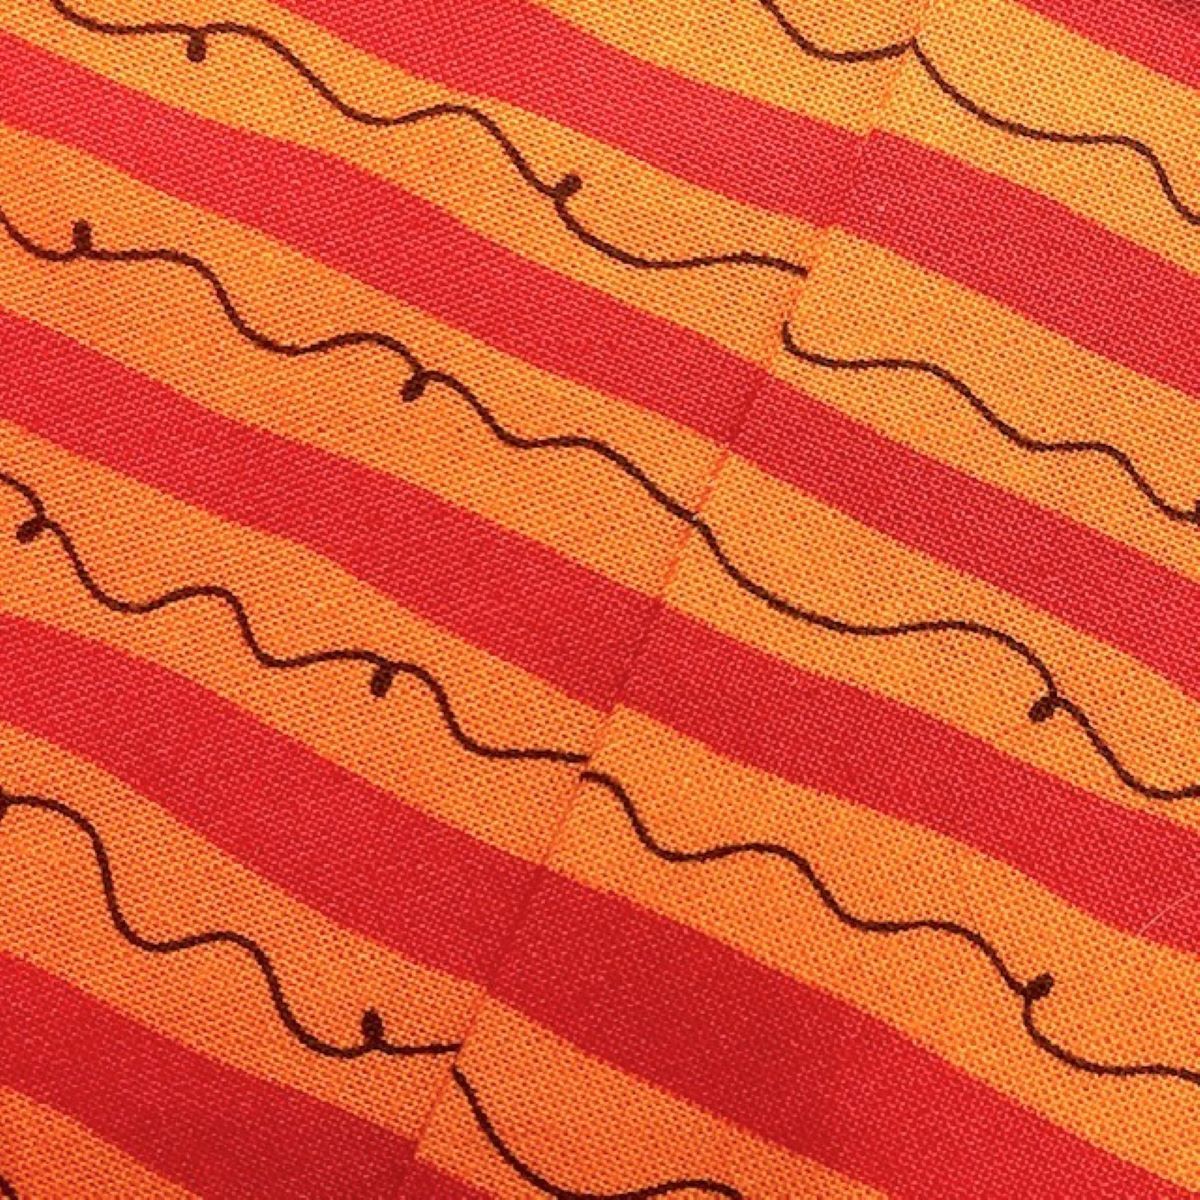 Matching Fabric Pattern Tutorial: matching seams